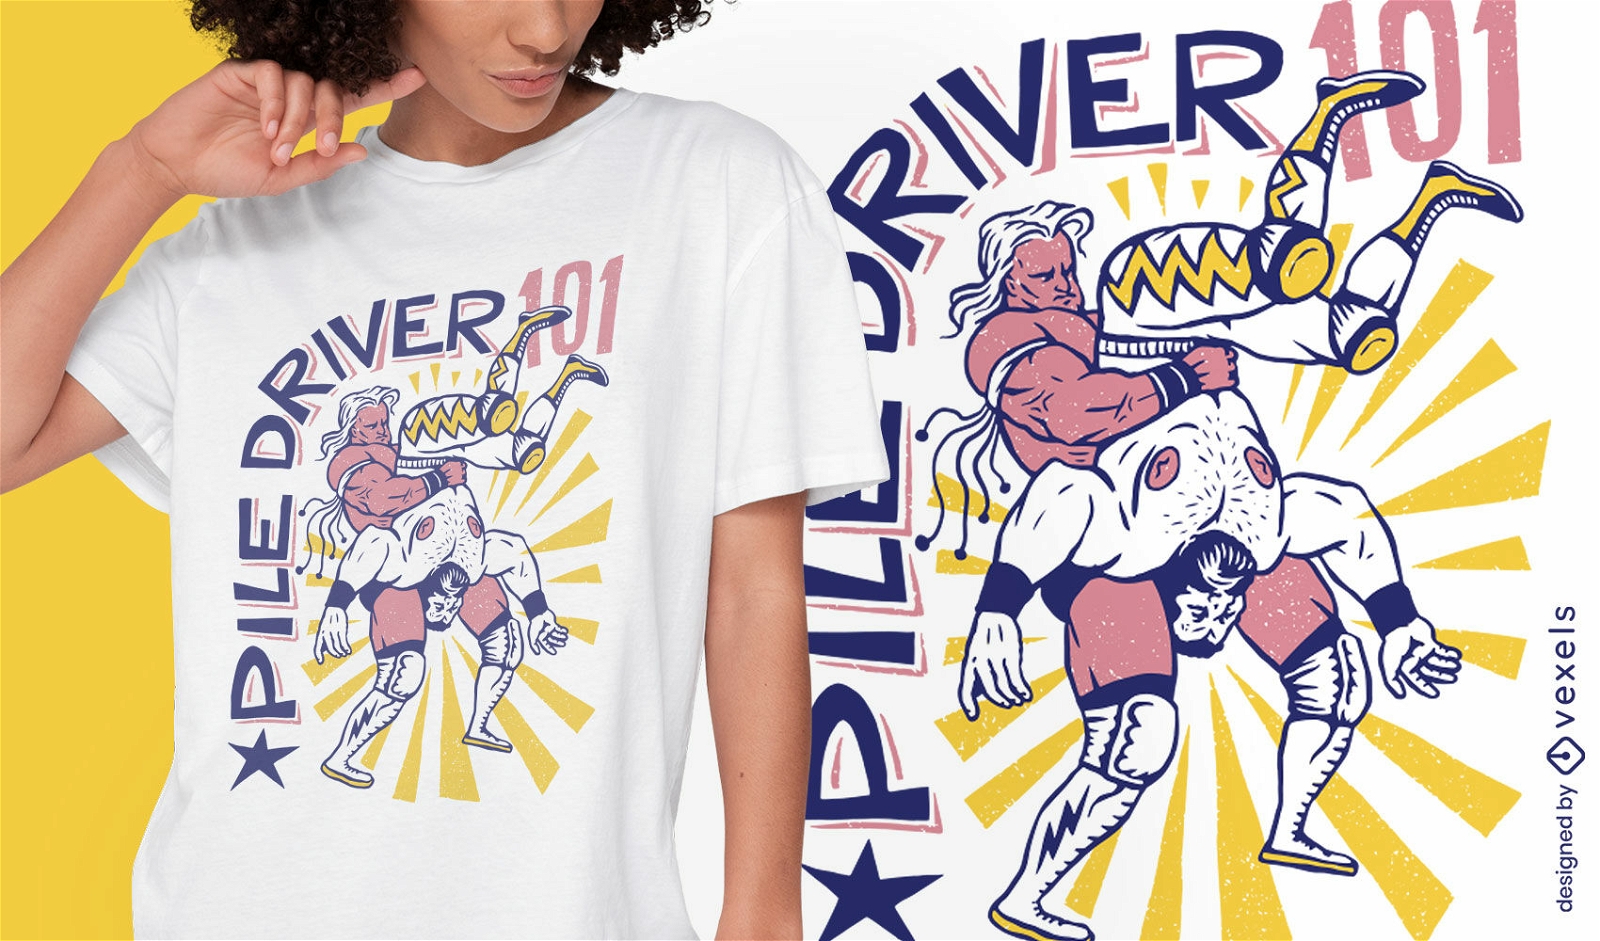 Piledriver wrestling t-shirt design